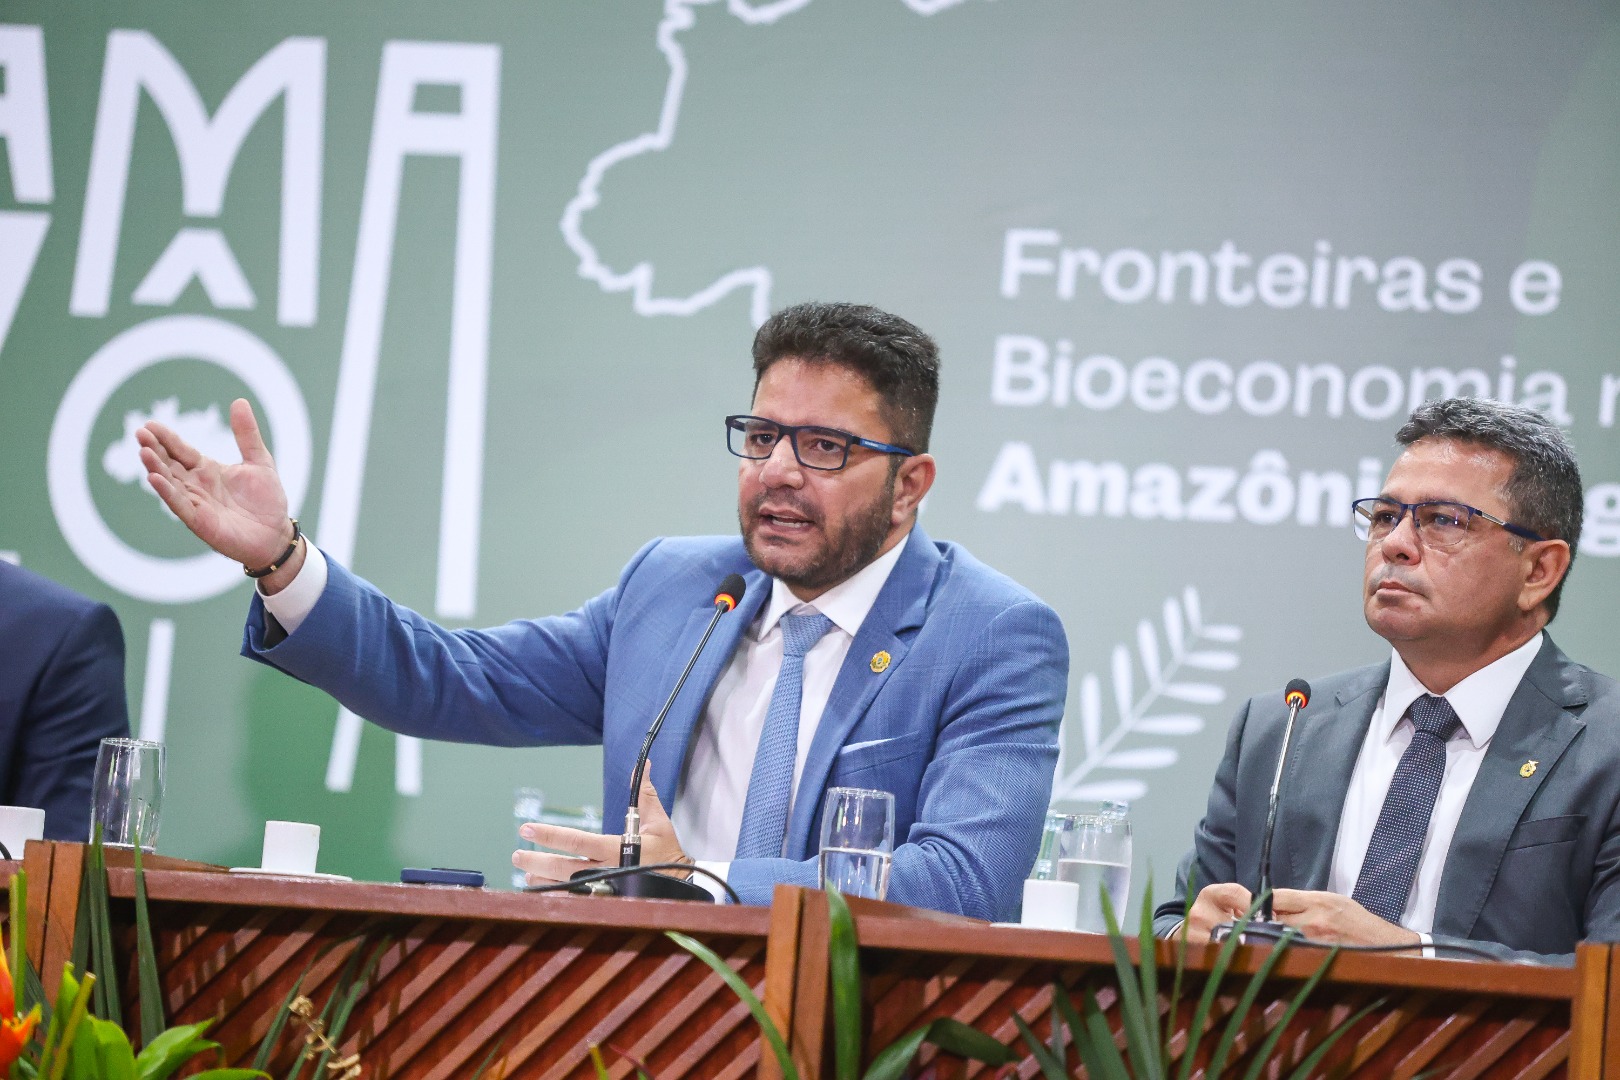 Seminário Internacional Desenvolve Amazônia: a Política de Fronteira e a Bioeconomia na Amazônia Legal